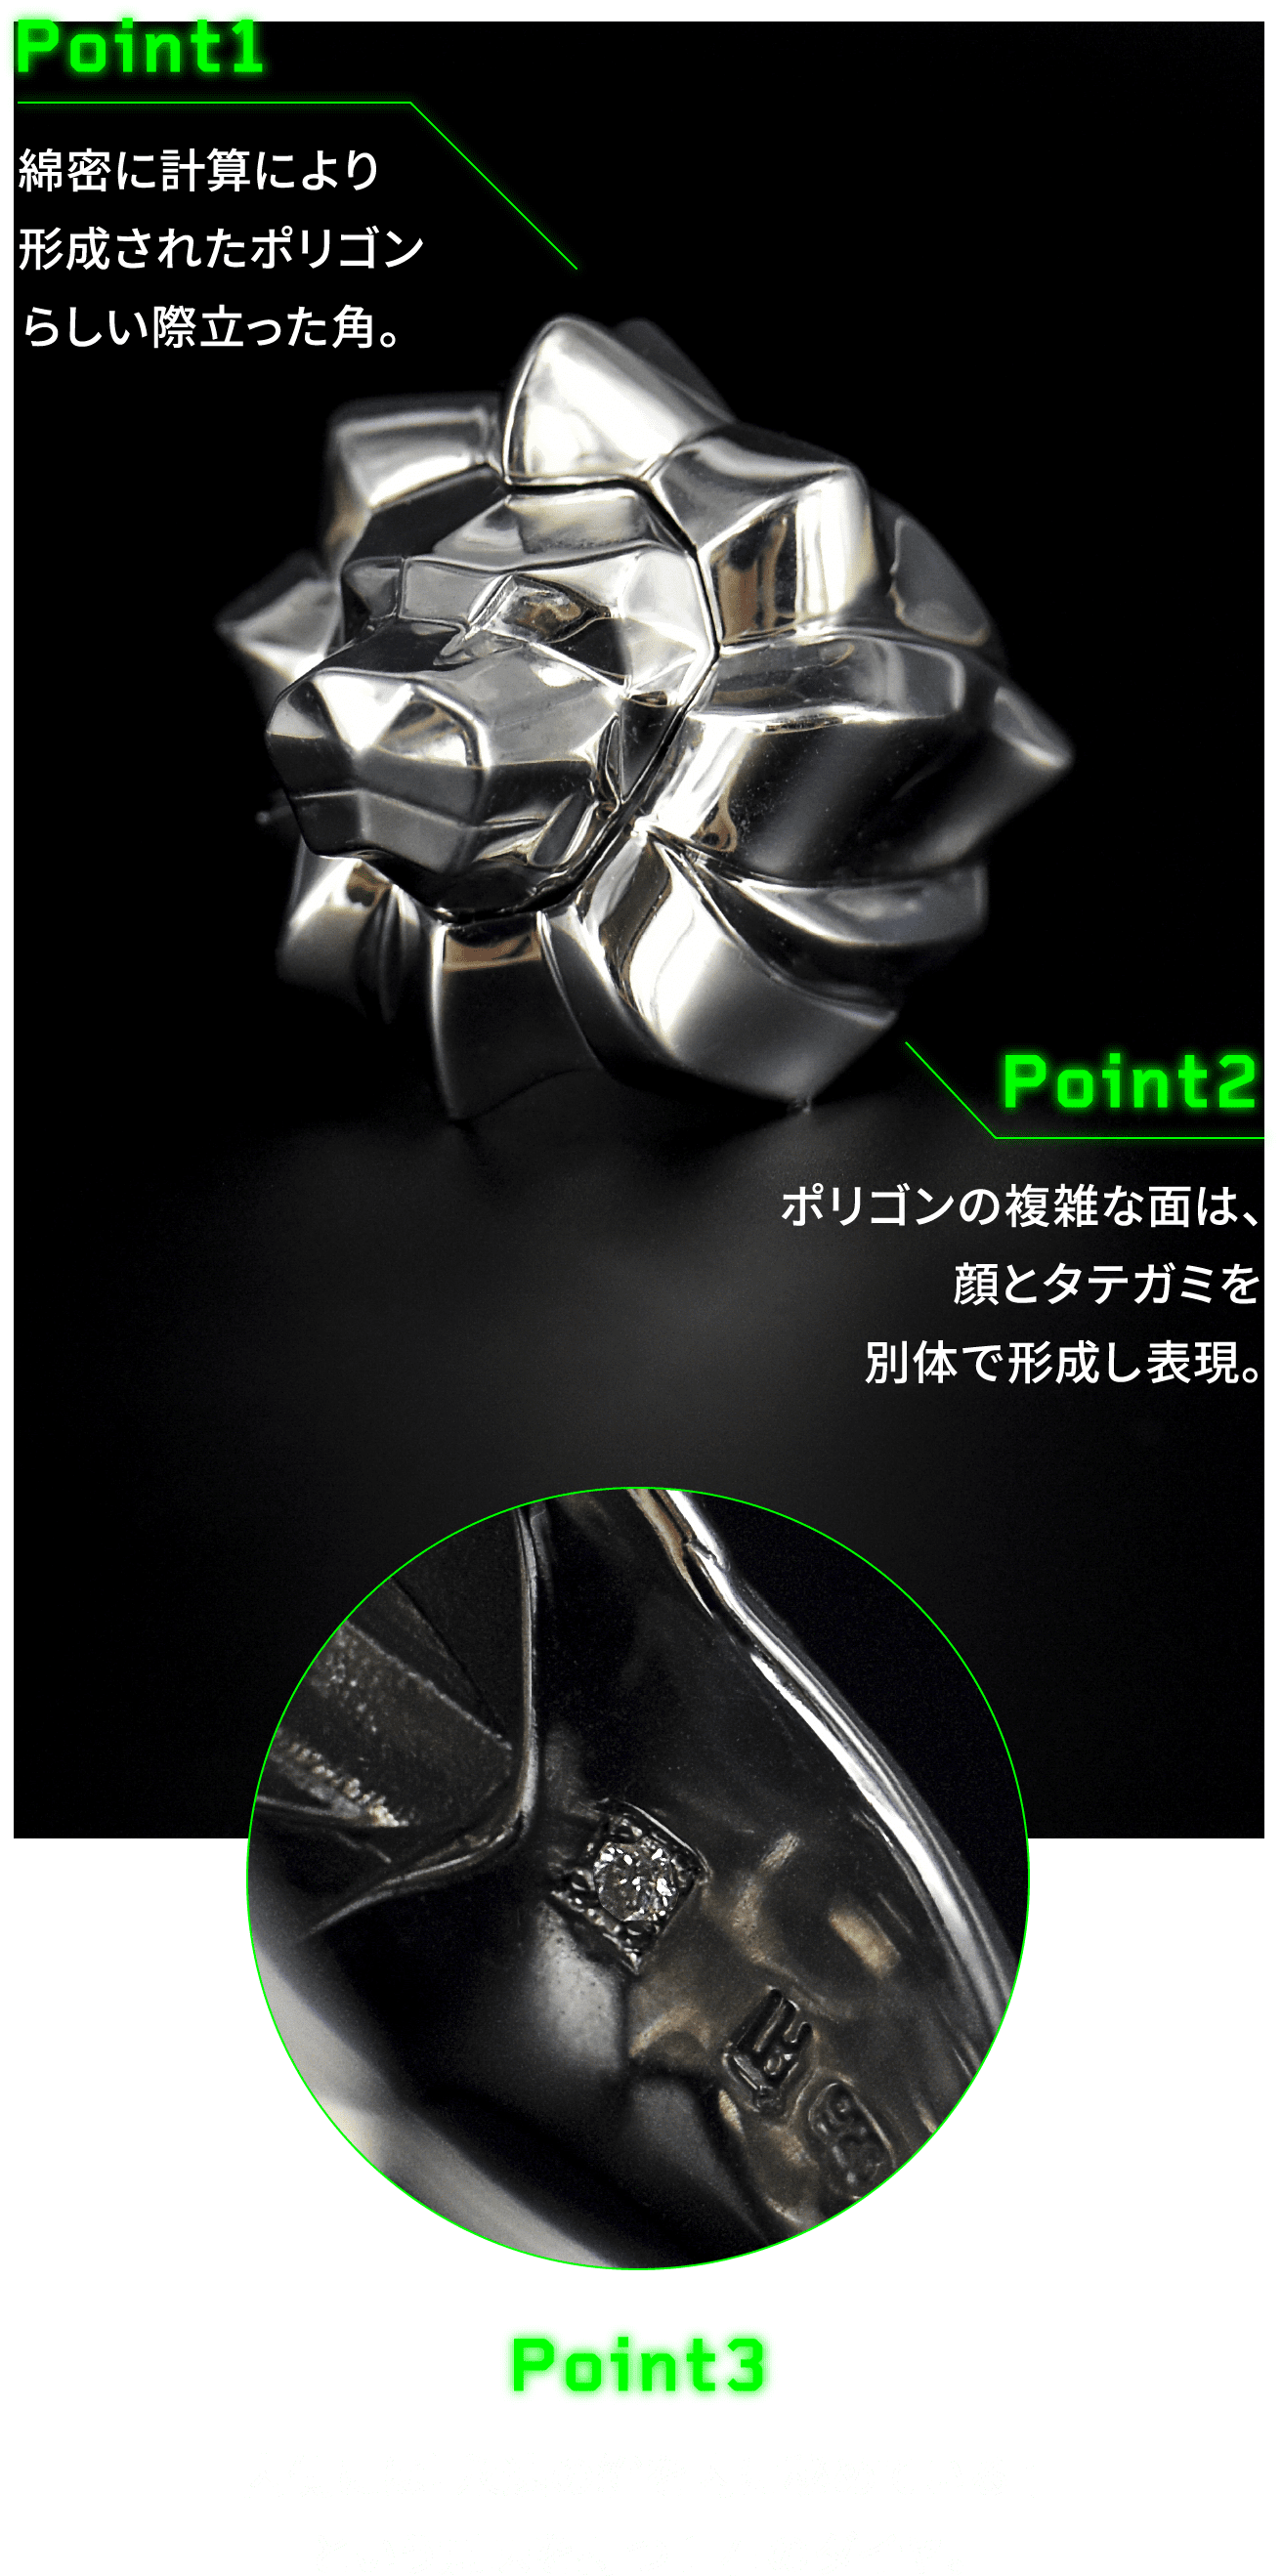 POINT 1 綿密に計算により形成されたポリゴンらしい際立った角。POINT 2 ポリゴンの複雑な面は、顔とタテガミを別体で形成し表現。POINT 3 内側には『永遠の絆を内に秘めている』という意味を持つ1 石のダイヤ。